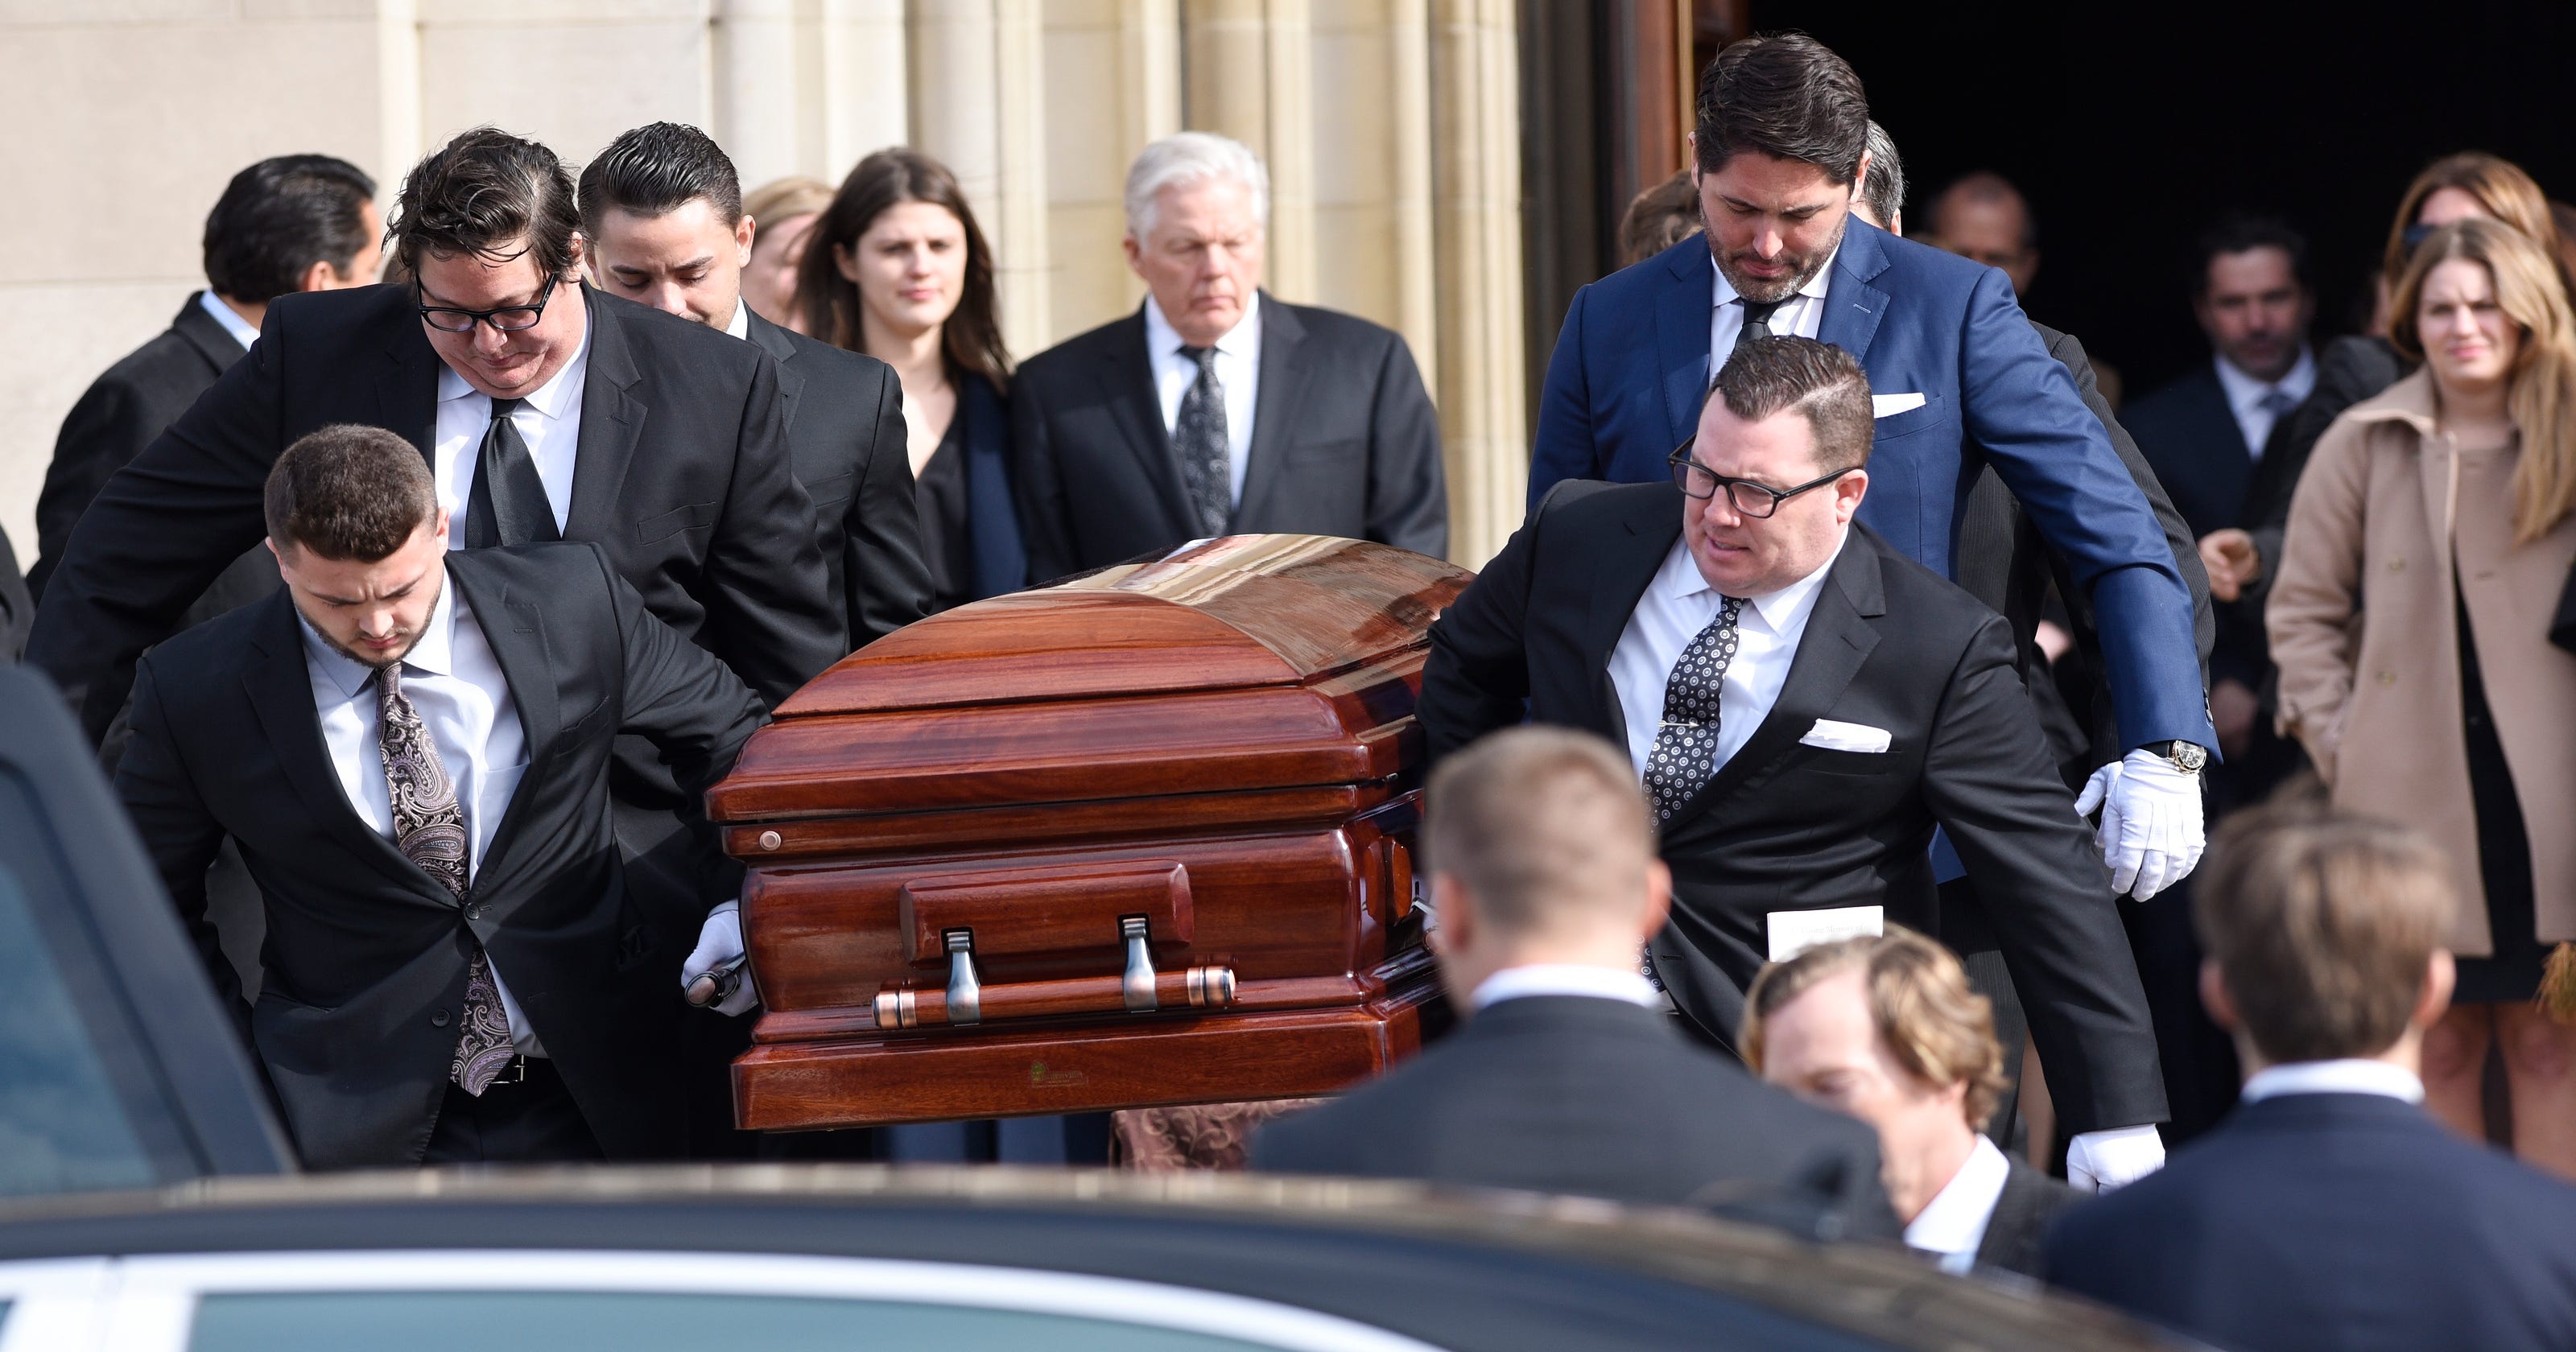 Funeral held for Art Van founder3200 x 1680